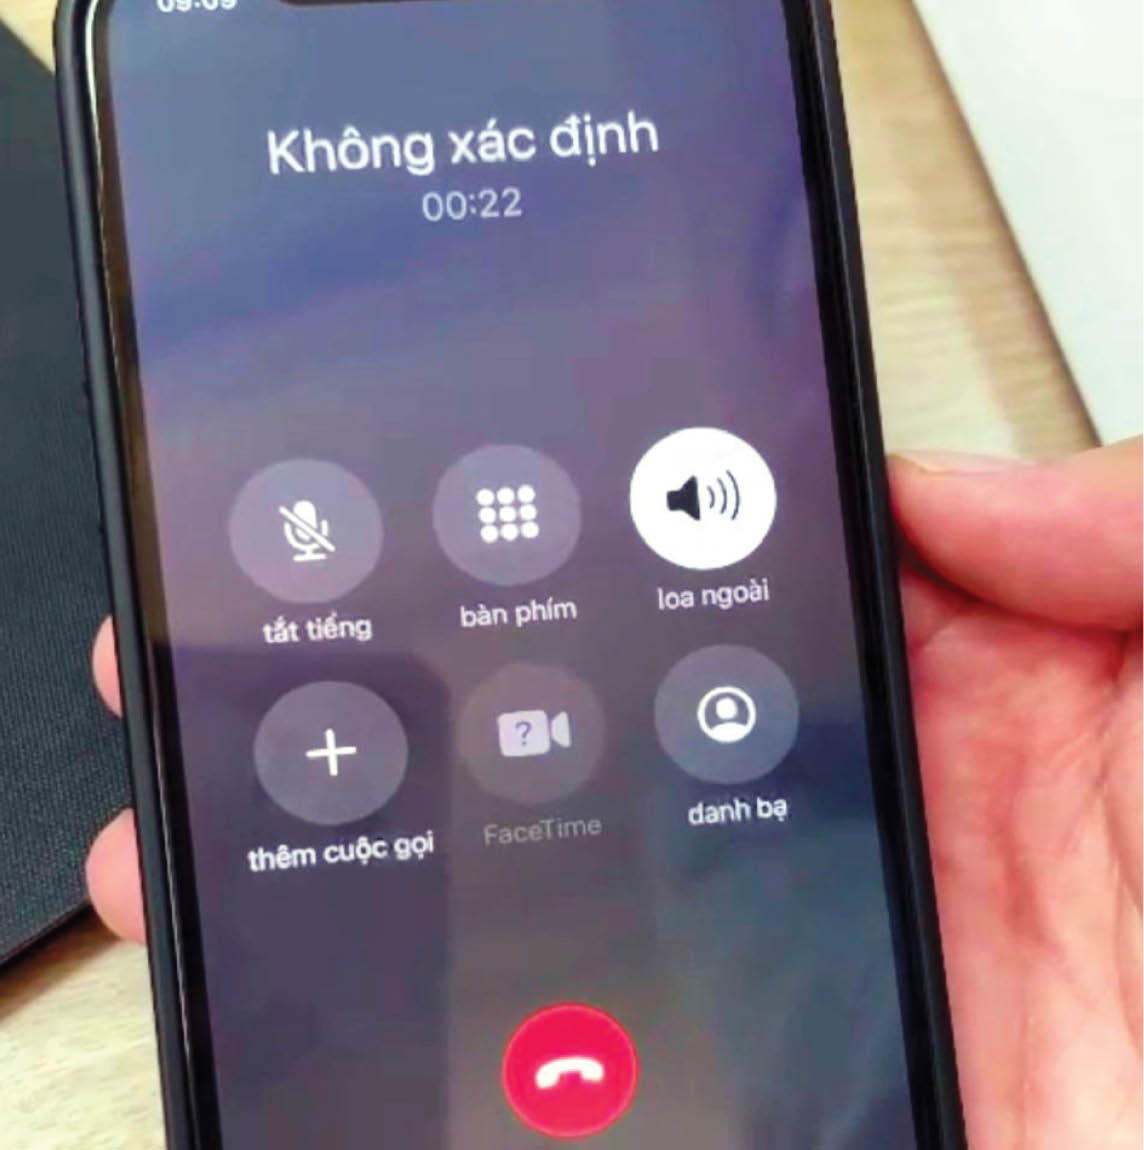 Tổng hợp 14 đầu số điện thoại giả danh ở Việt Nam, phải cúp máy ngay lập tức nếu nhìn thấy - ảnh 3